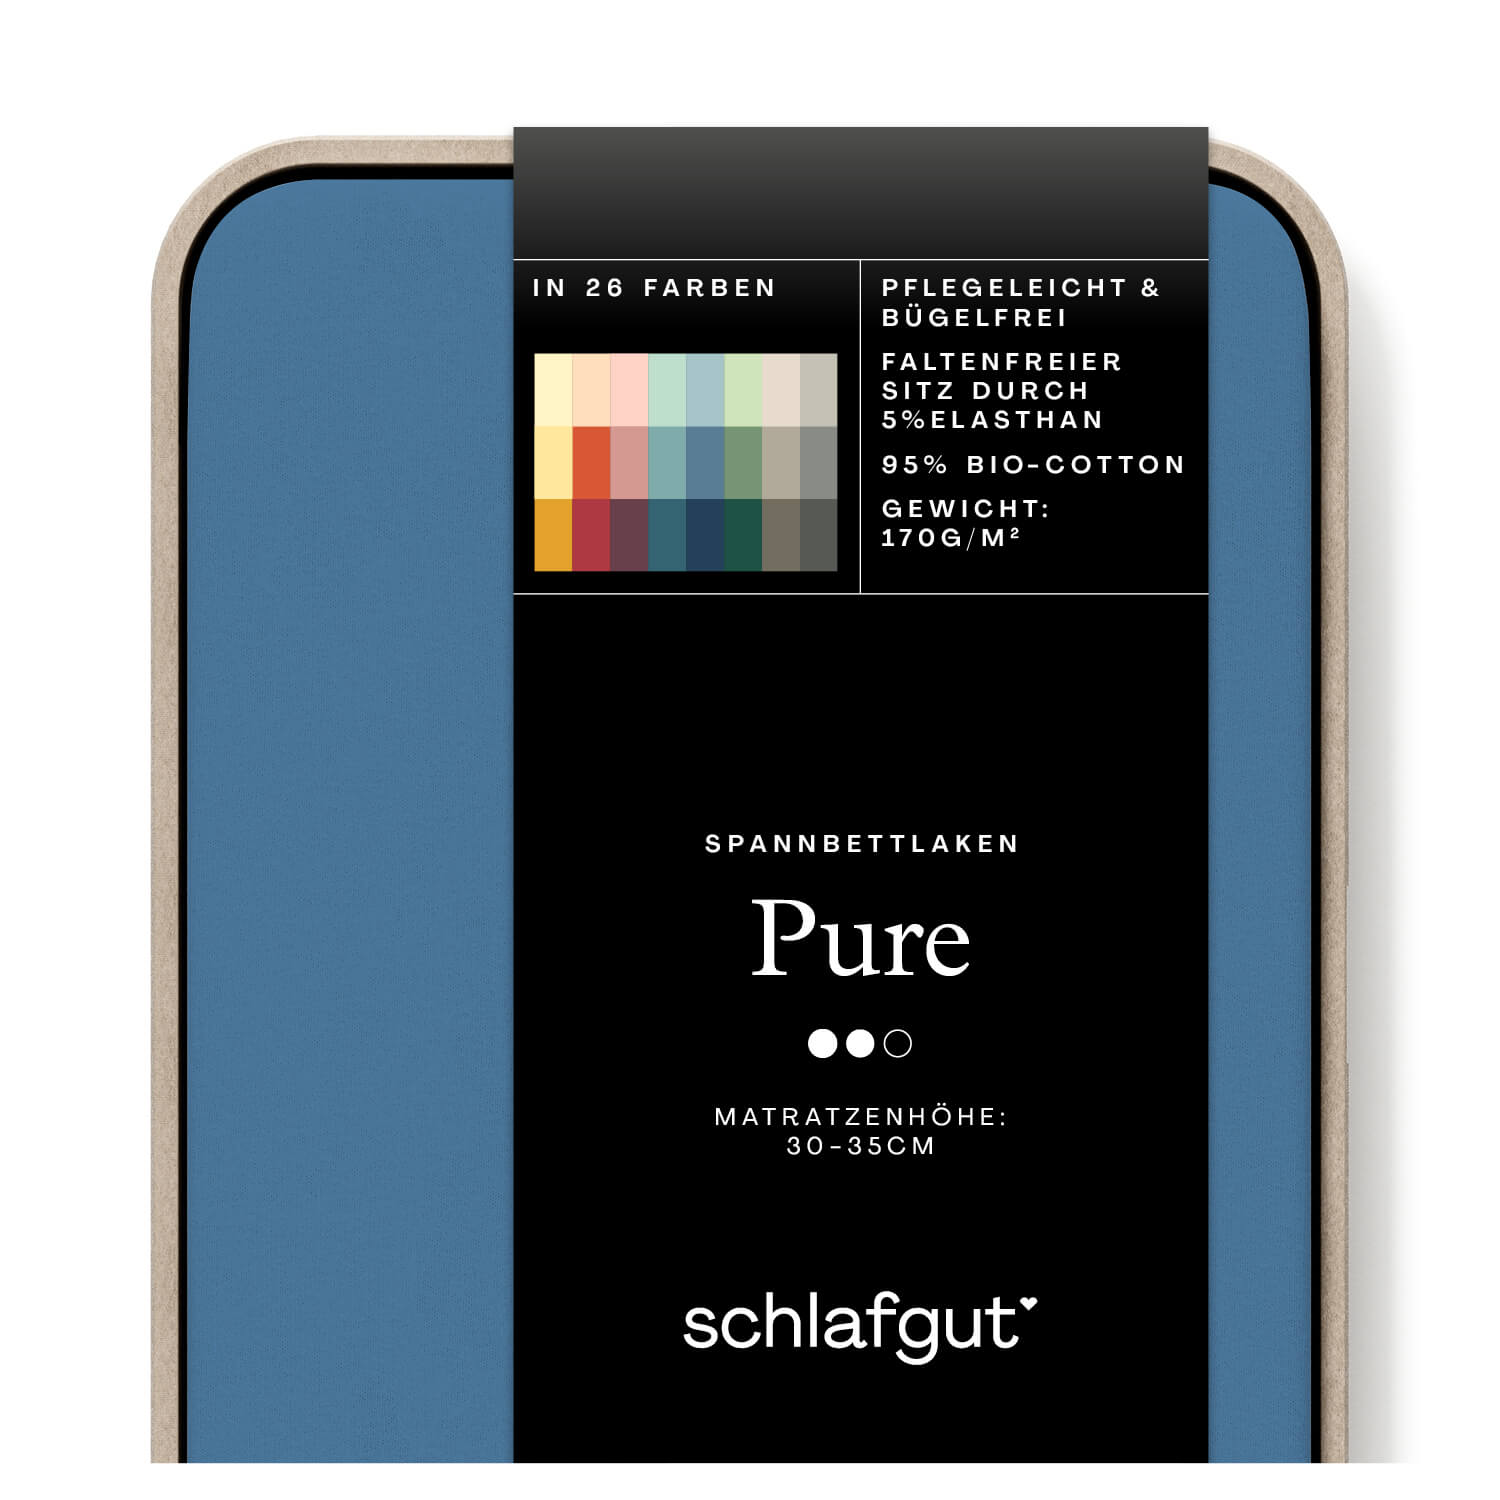 Das Produktbild vom Spannbettlaken der Reihe Pure in Farbe blue mid von Schlafgut